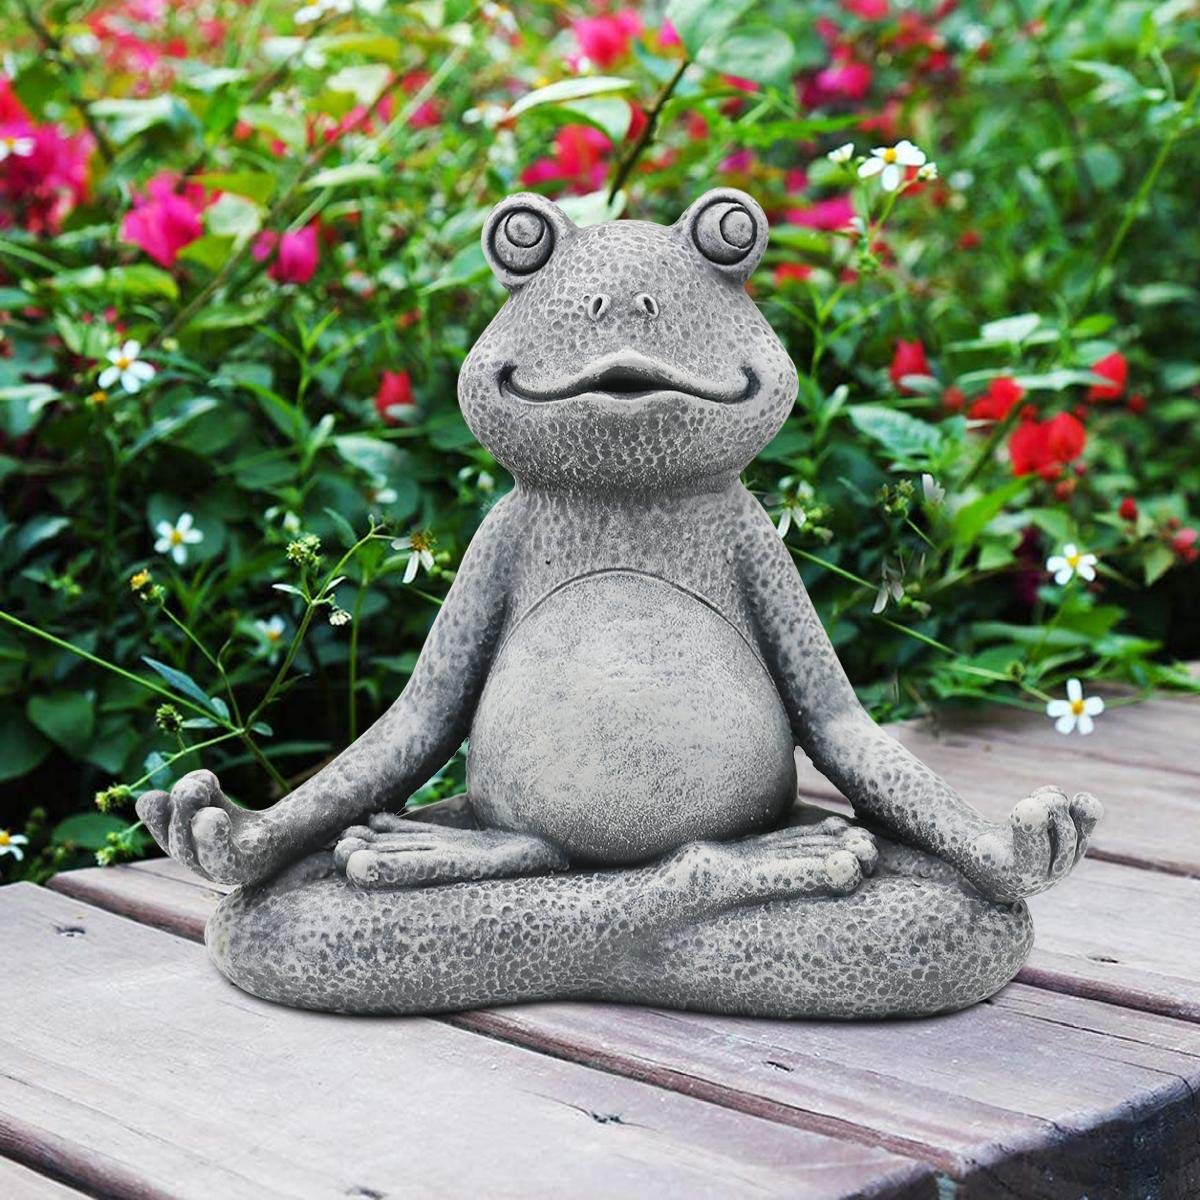 Nacome Meditating Frog Miniature Figurine,Zen Yoga Frog garden Statue Ornament- IndoorOutdoor garden Sculpture for Fairy garden,